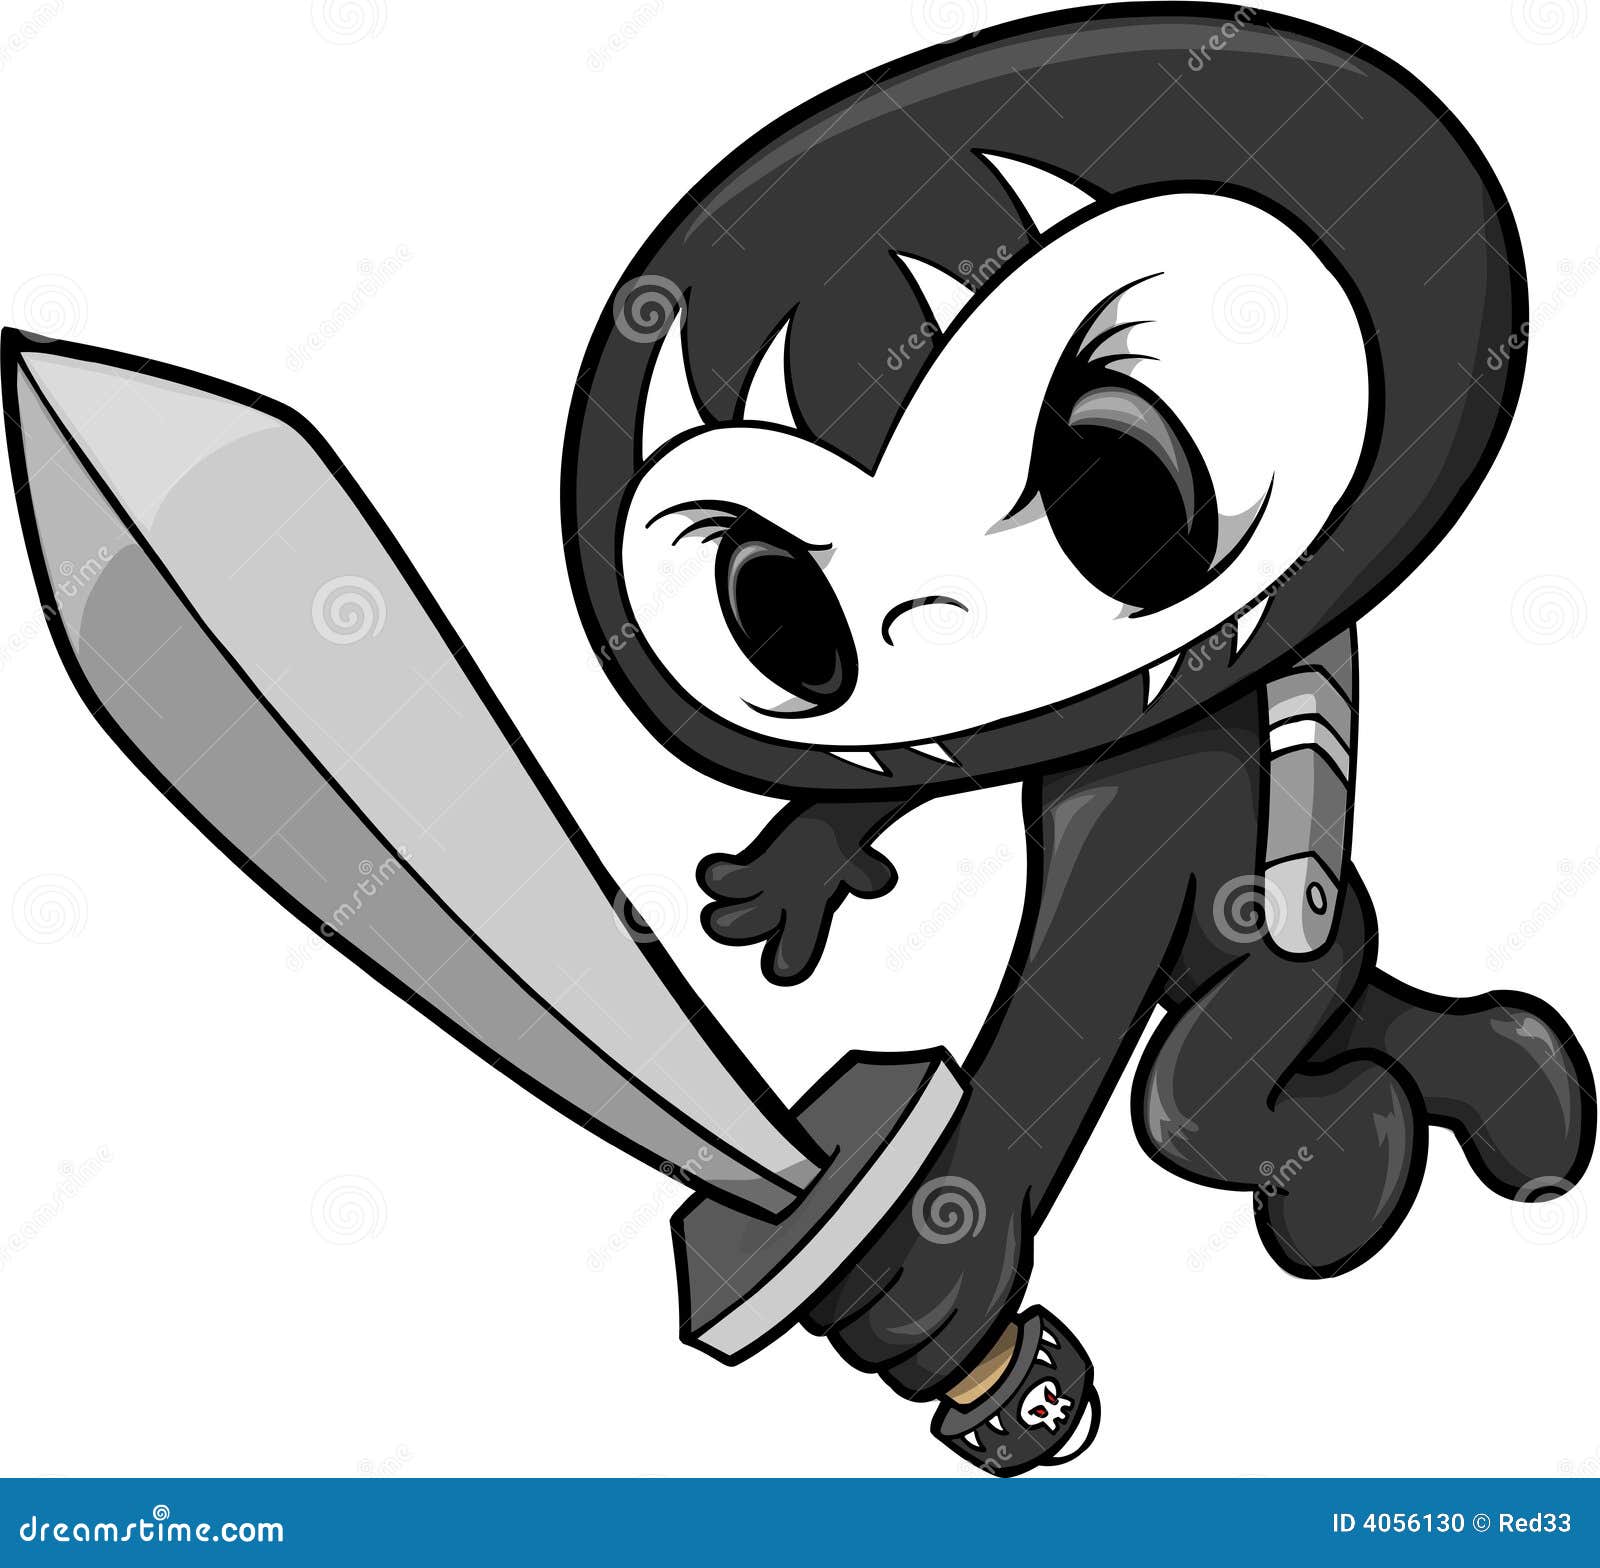 Desenho Da Ilustração De Subida Ninja Ilustração do Vetor - Ilustração de  capacete, samurai: 233354679